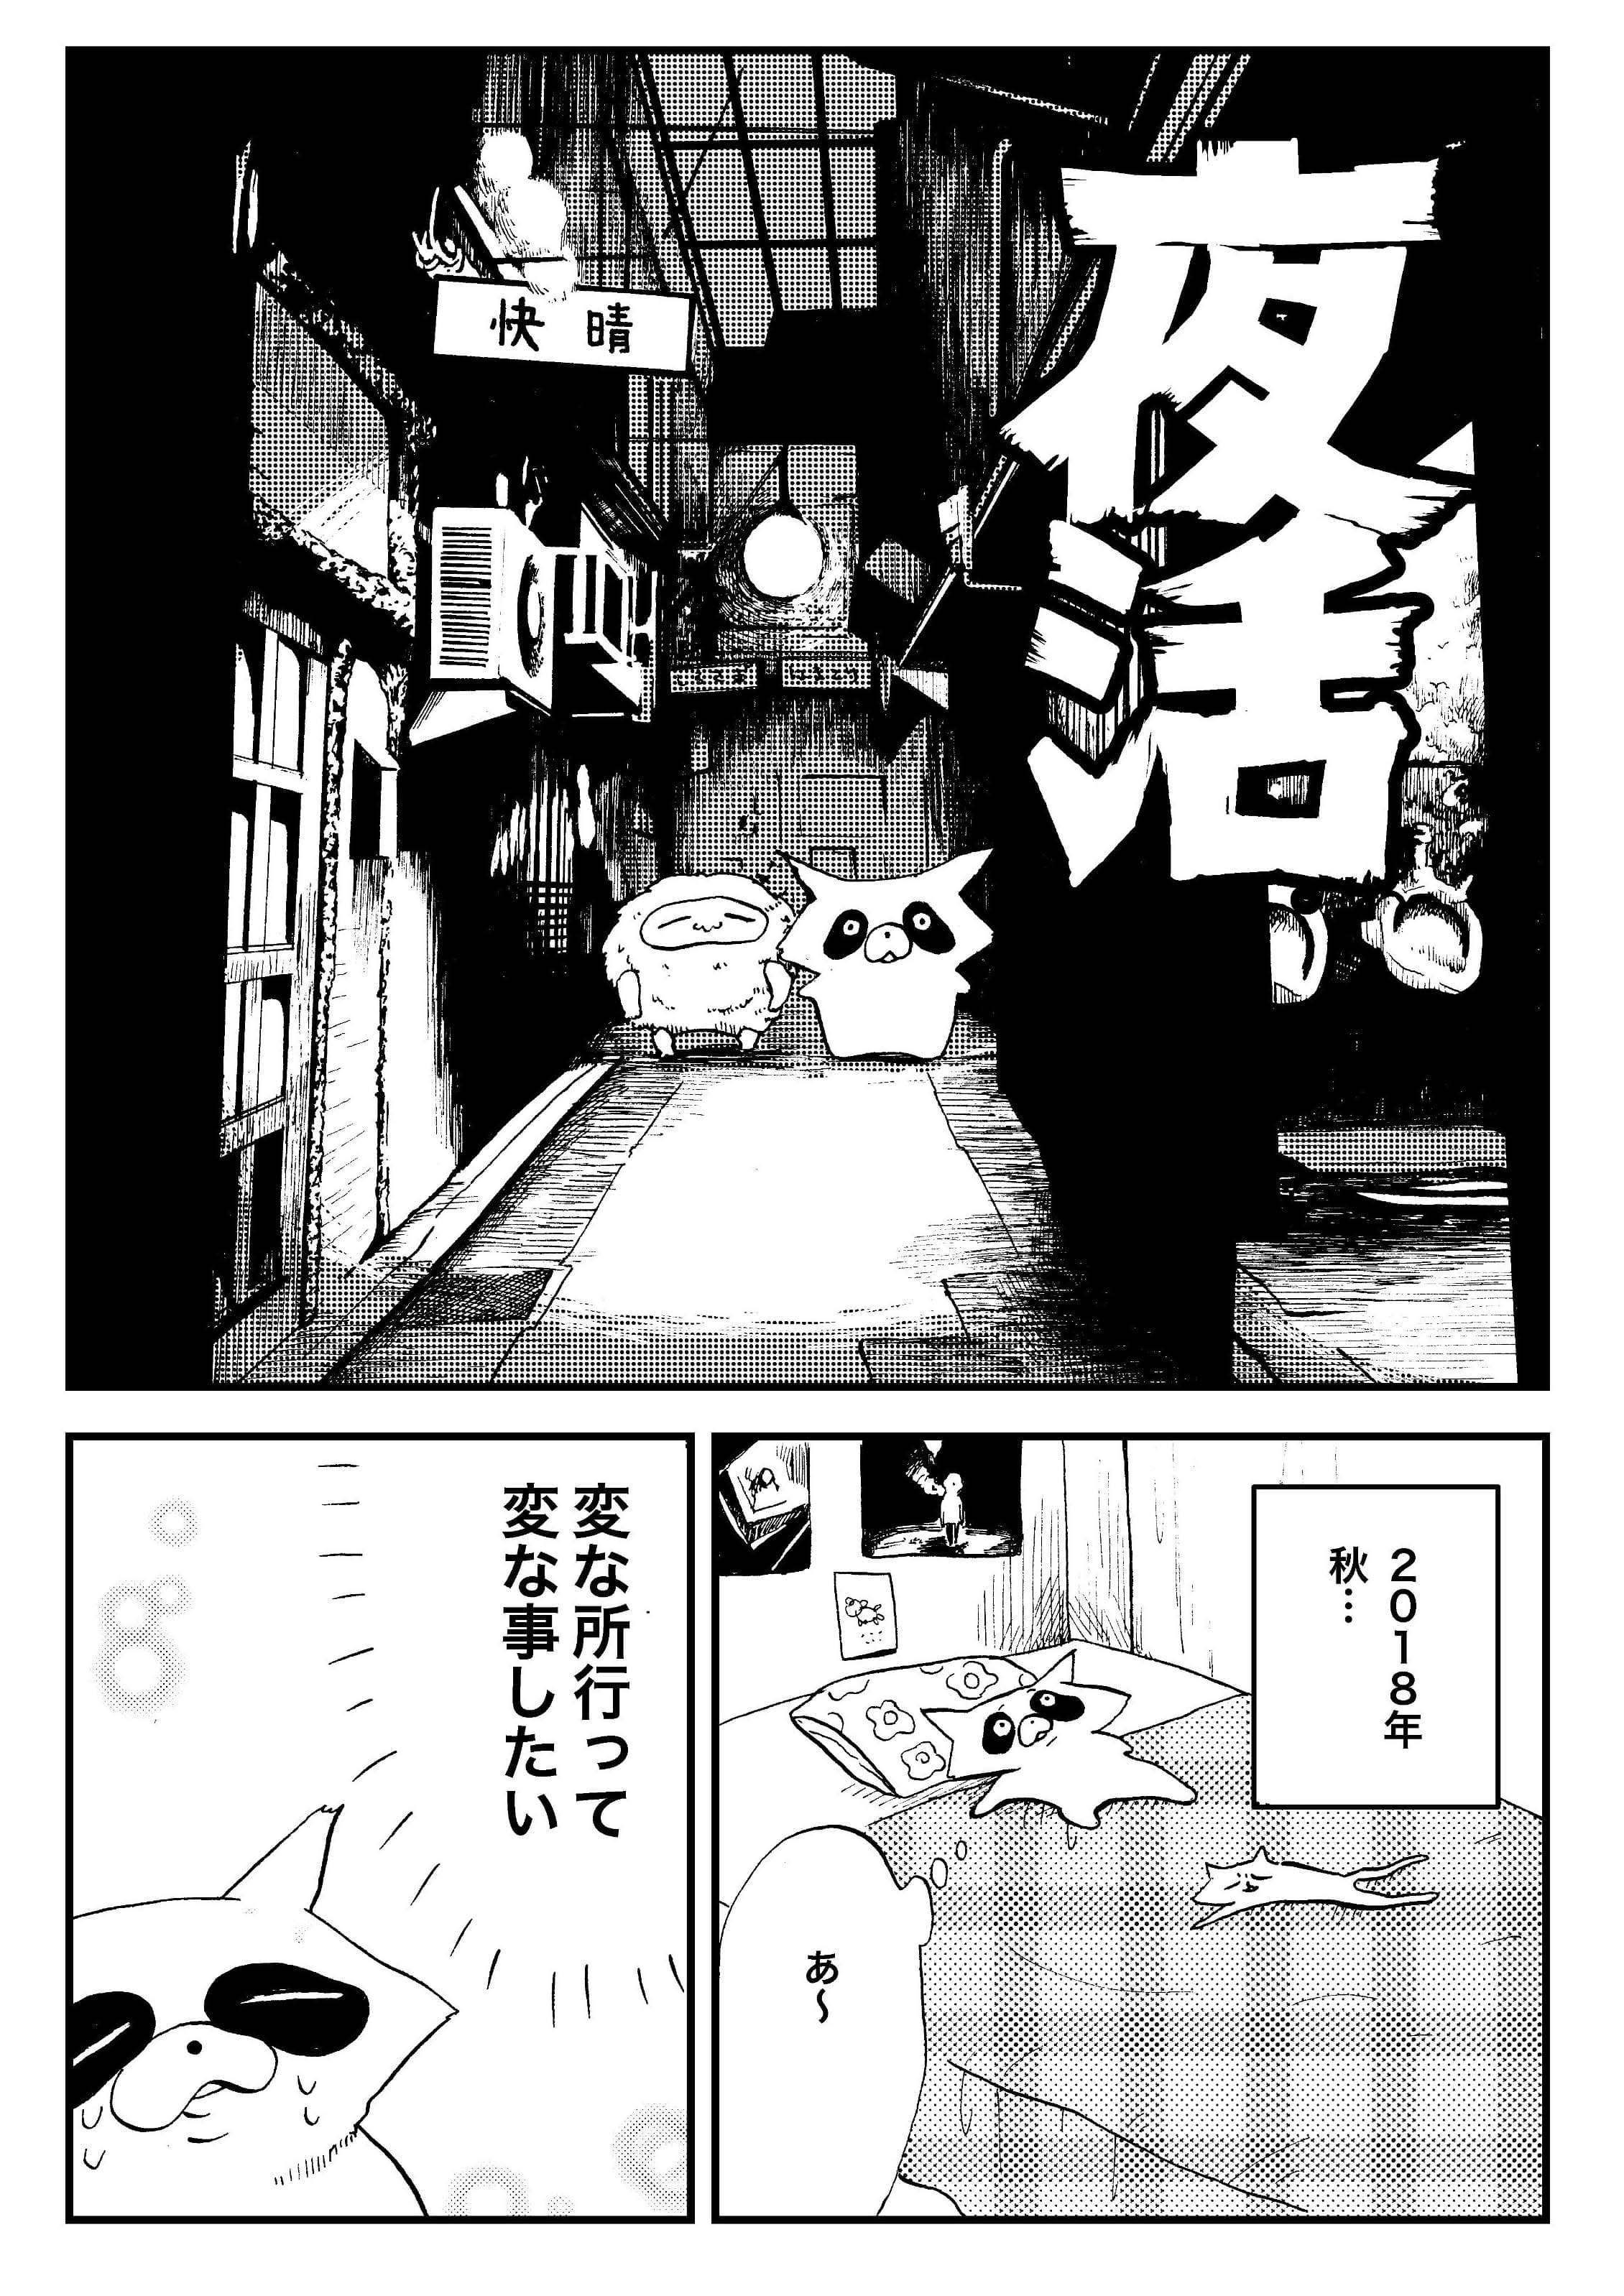 『夜活～夜の街を散歩した日記漫画～』／森凡 １.jpg